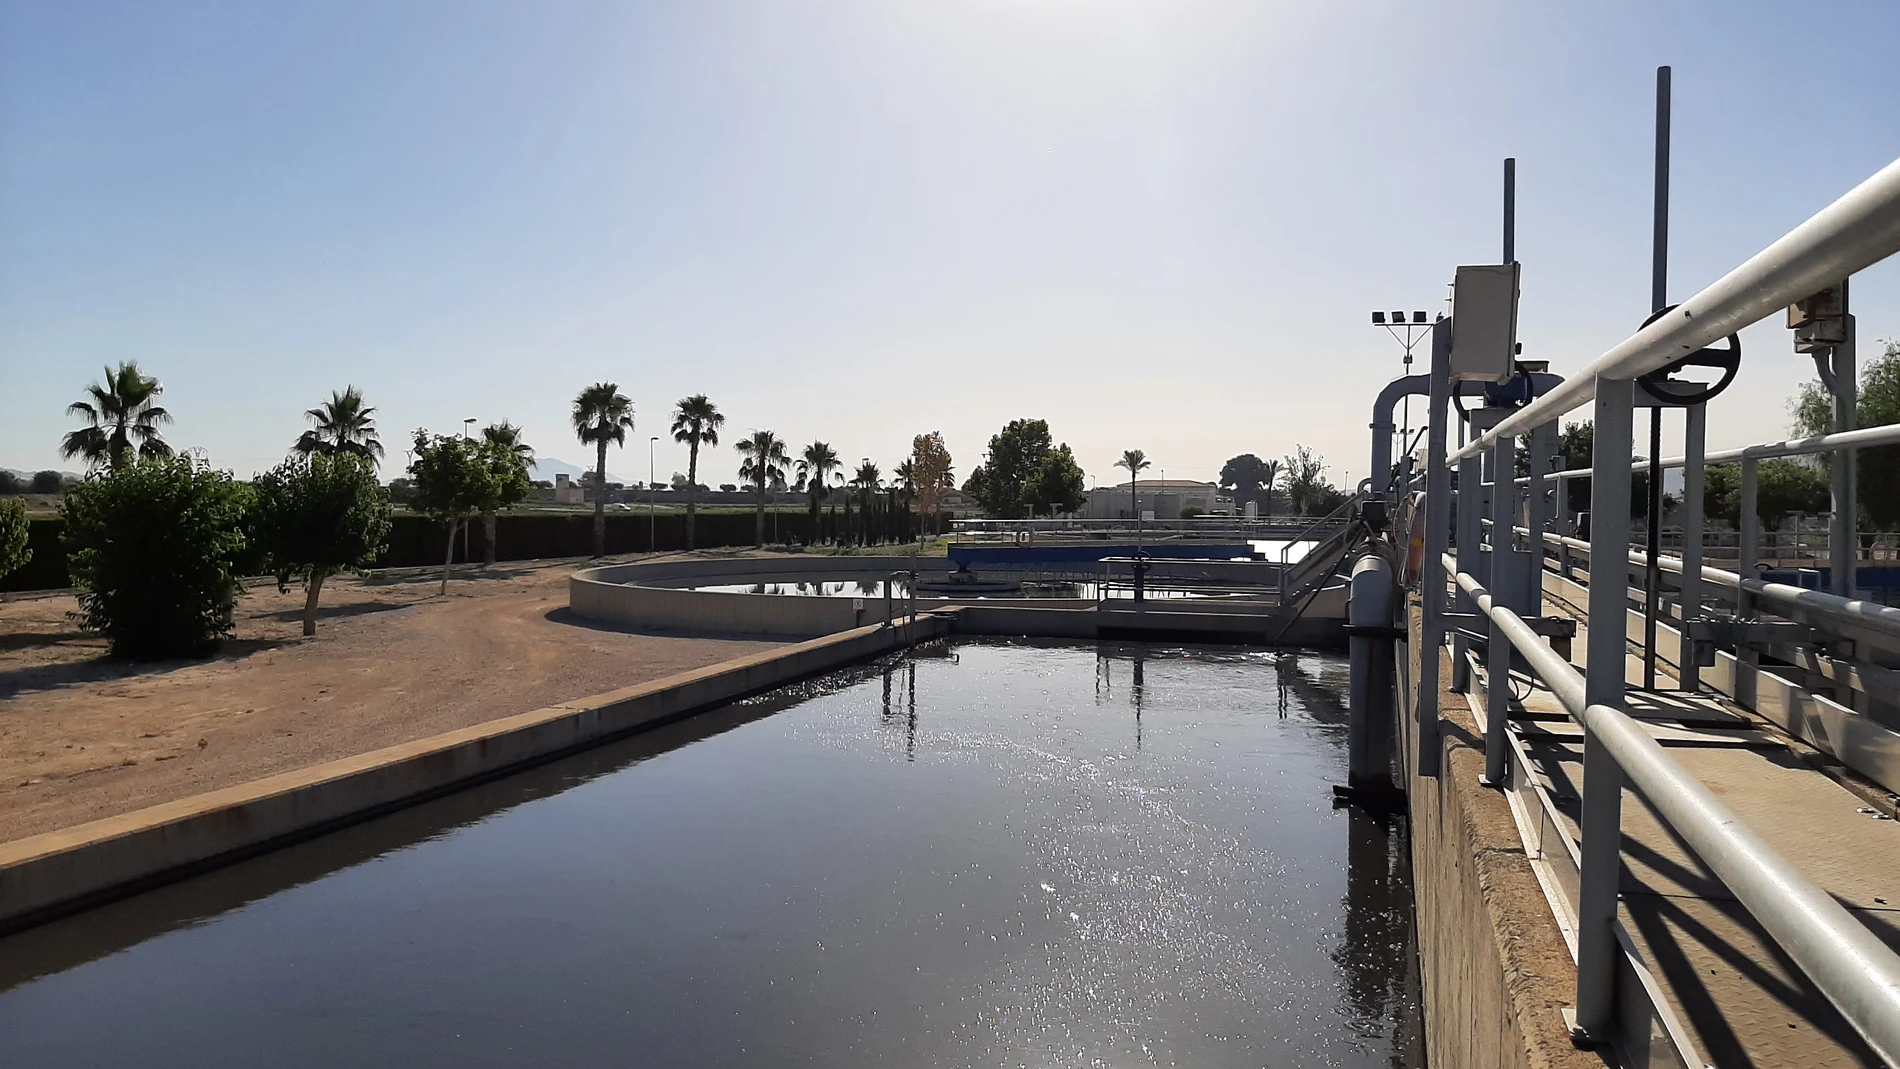 La depuradora La Hoya, en Lorca (Murcia) tiene una capacidad media de tratamiento de 20.000 m3 de aguas residuales al día. Tras un tratamiento avanzado, el agua se regenera para nuevos usos y se reutiliza principalmente para riego agrícola, clave para compensar la situación de estrés hídrico en la región